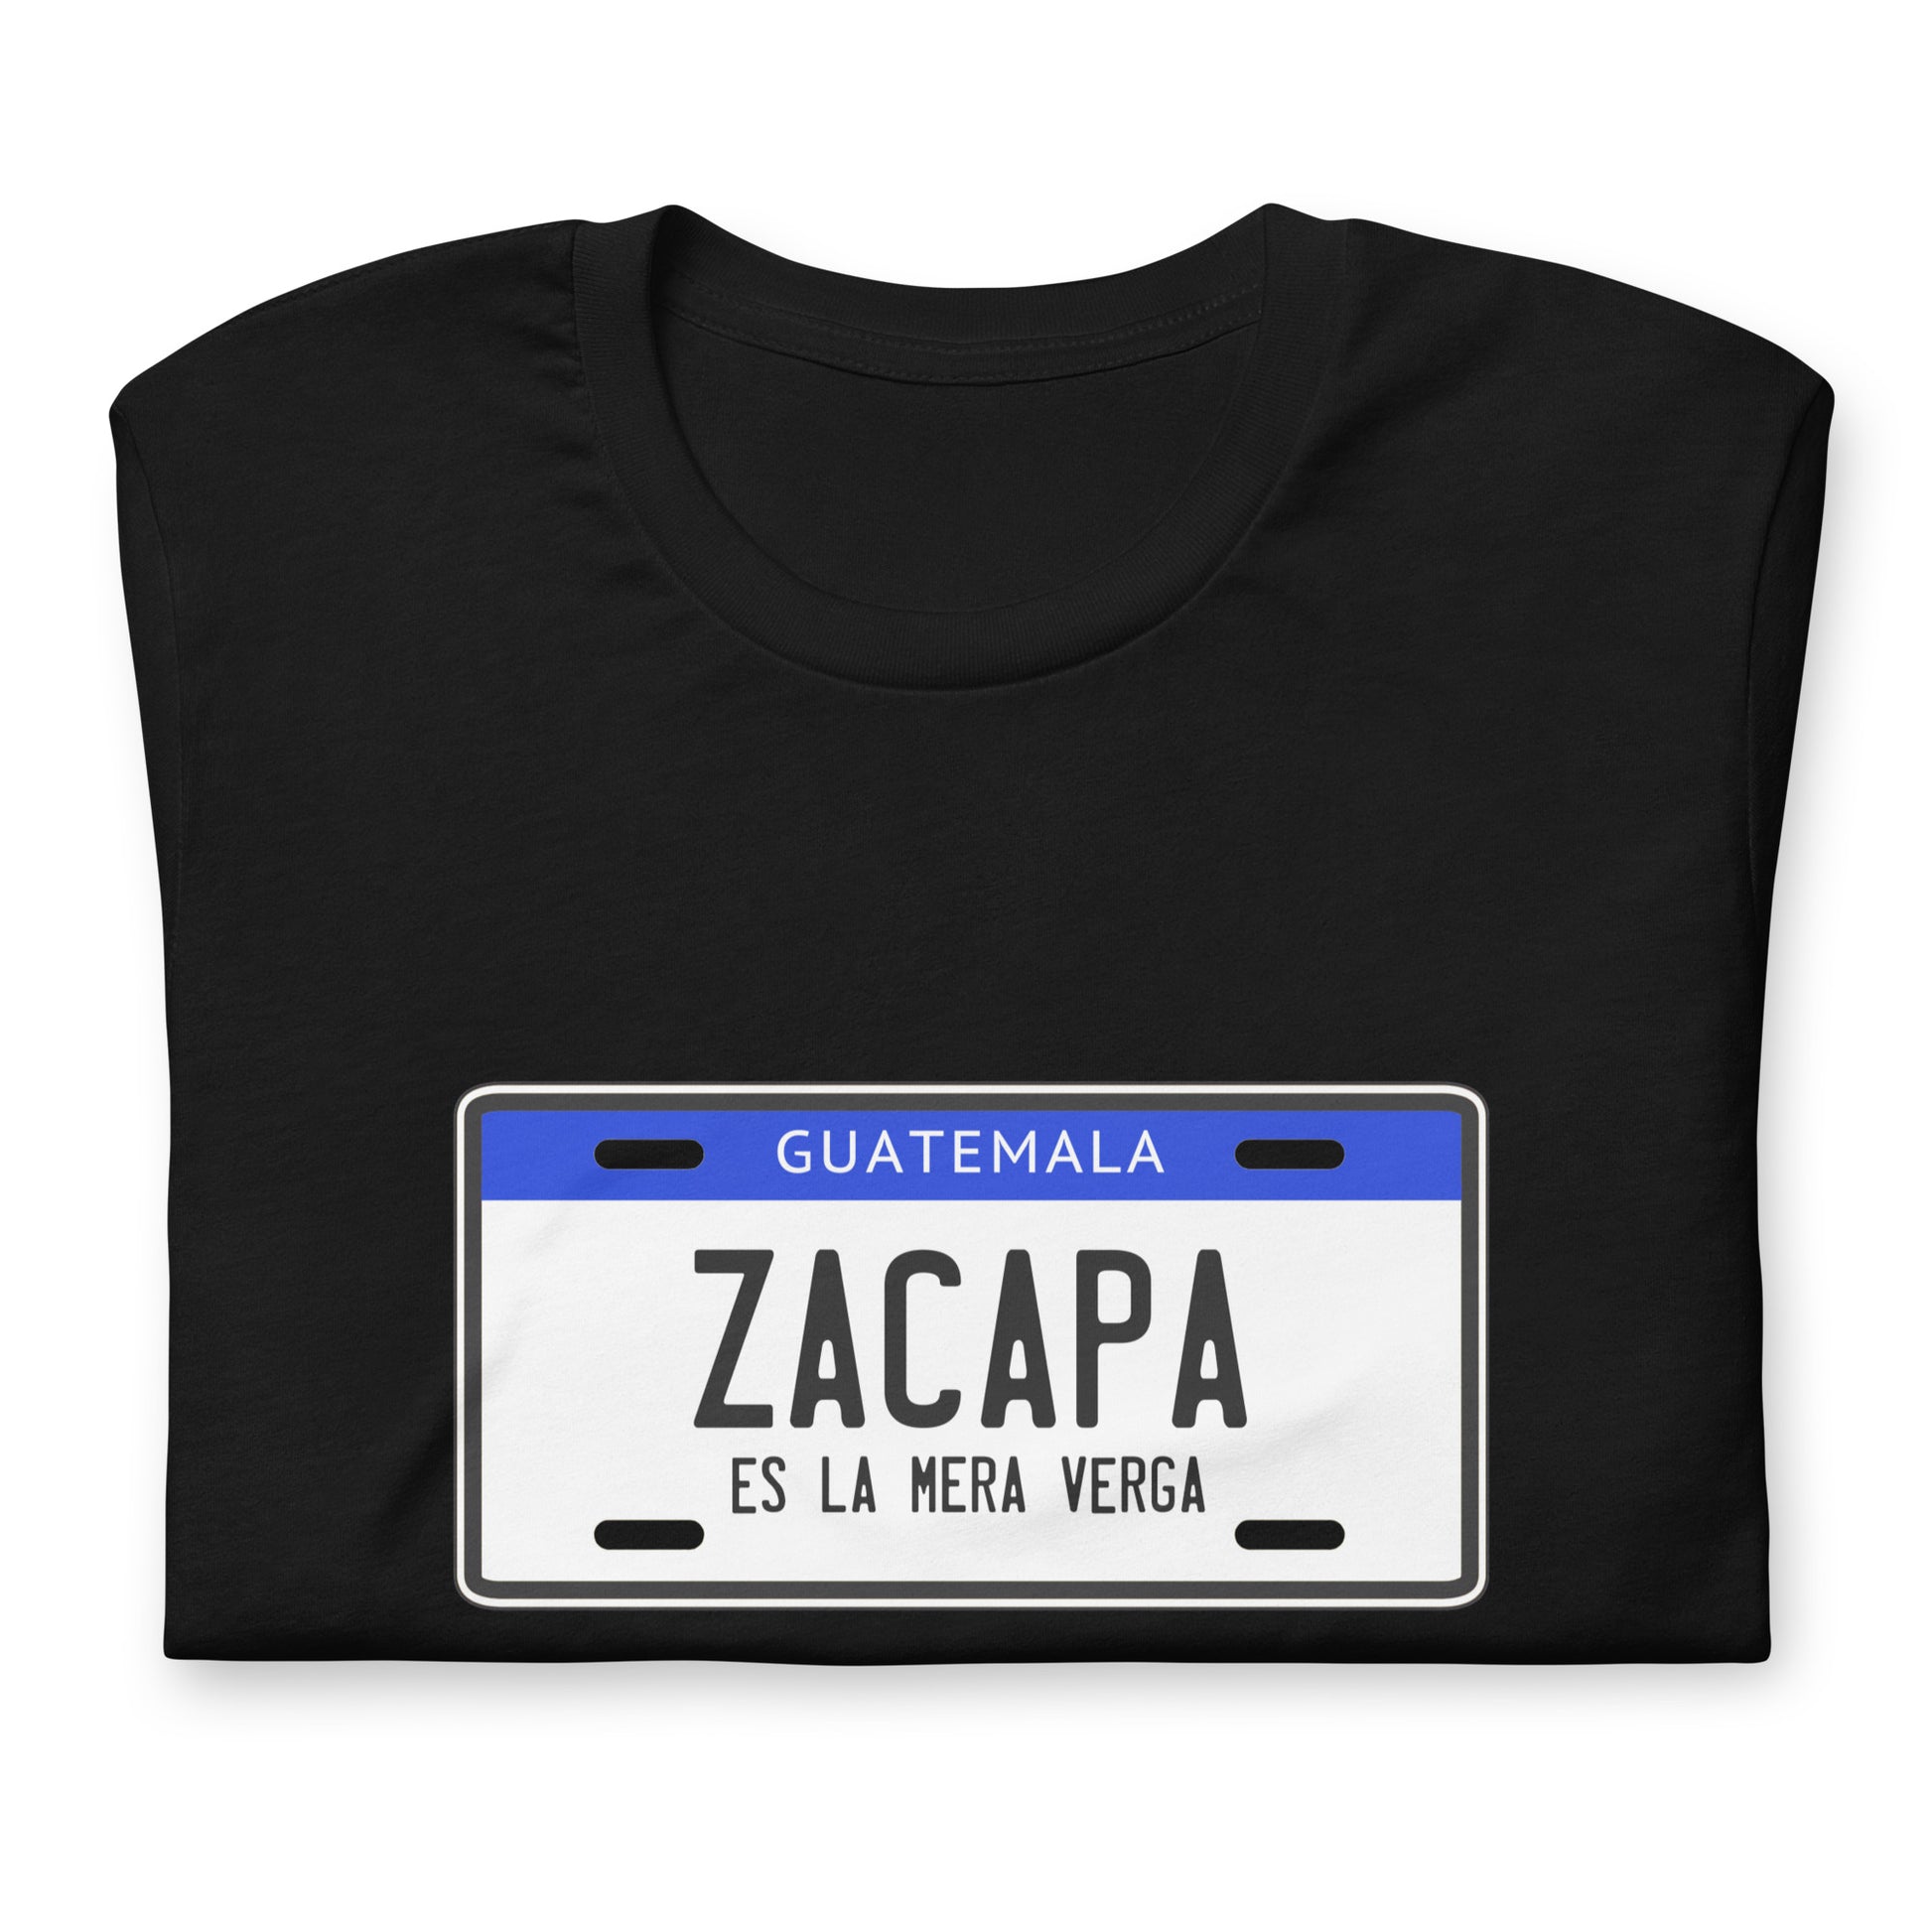 Playera Zacapa es la V, Descubre calidad excepcional y estampados duraderos. Encuentra estilo y orgullo en cada prenda.